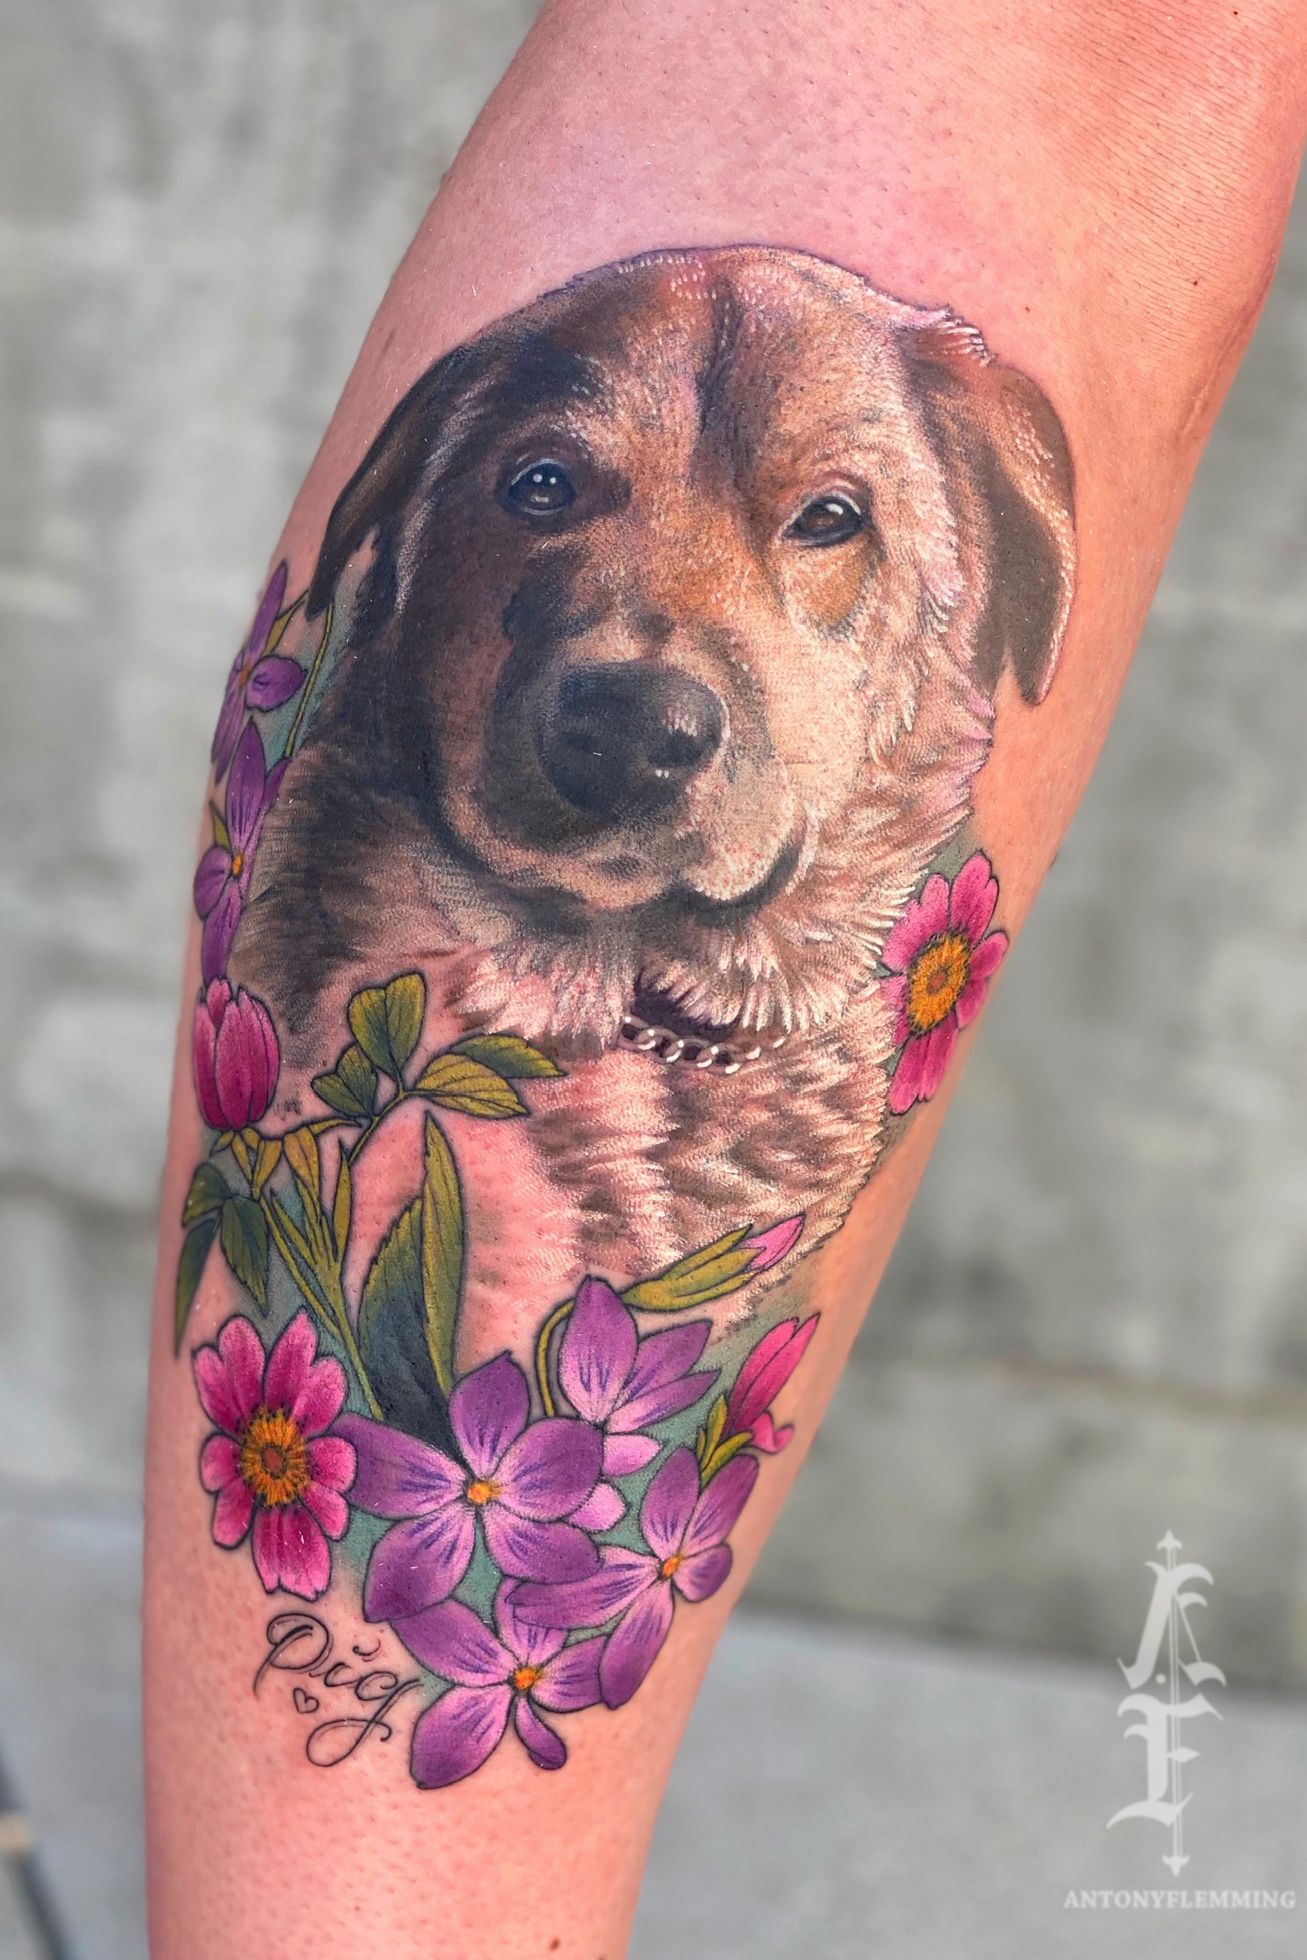 Minimalist dog tattoo on the inner arm